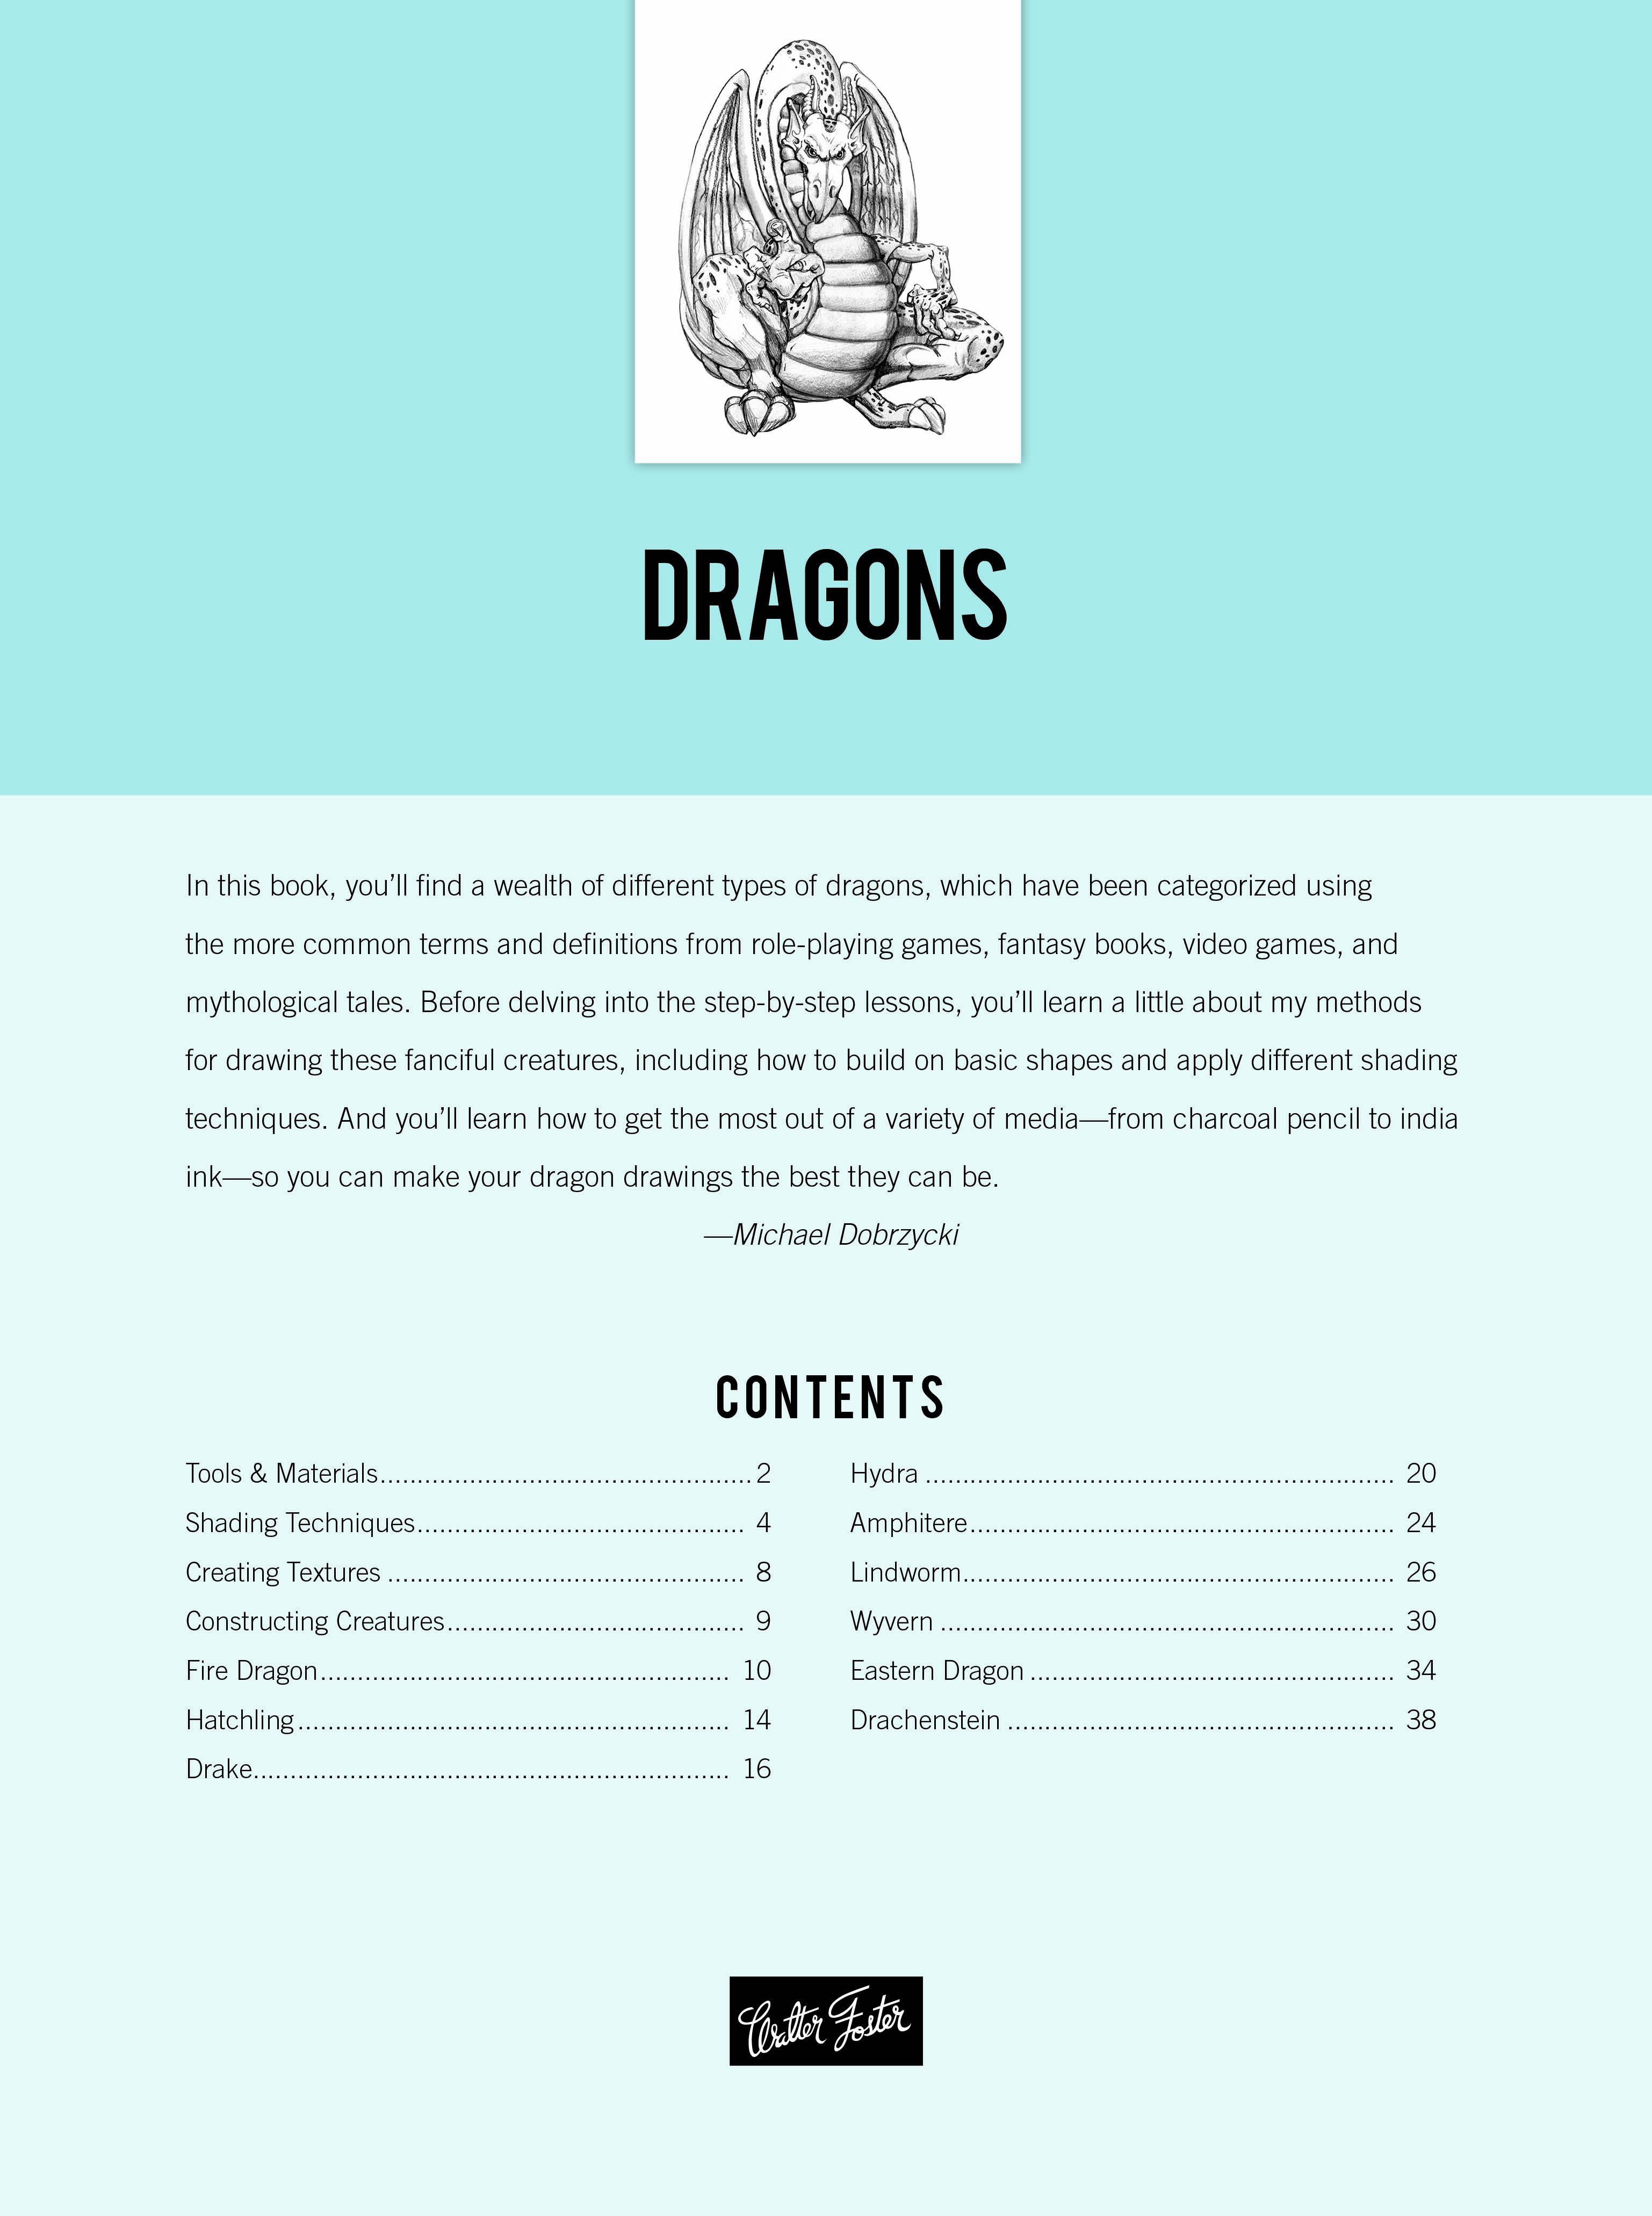 Drawing: Dragons